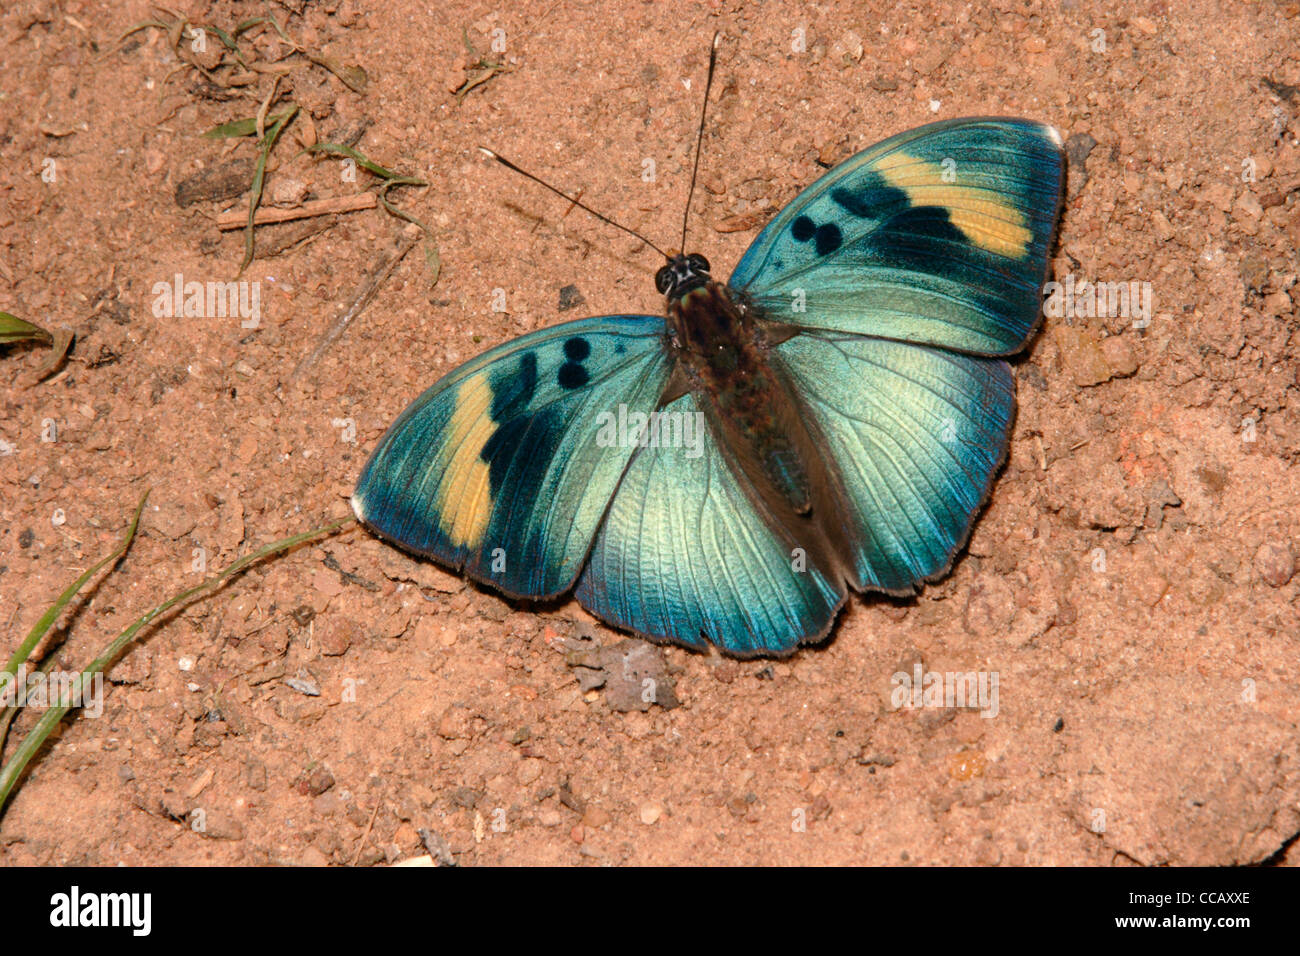 Weit verbreitete Förster Schmetterling (Euphaedra Medon: Nymphalidae), männliche puddling im Regenwald, Ghana. Stockfoto